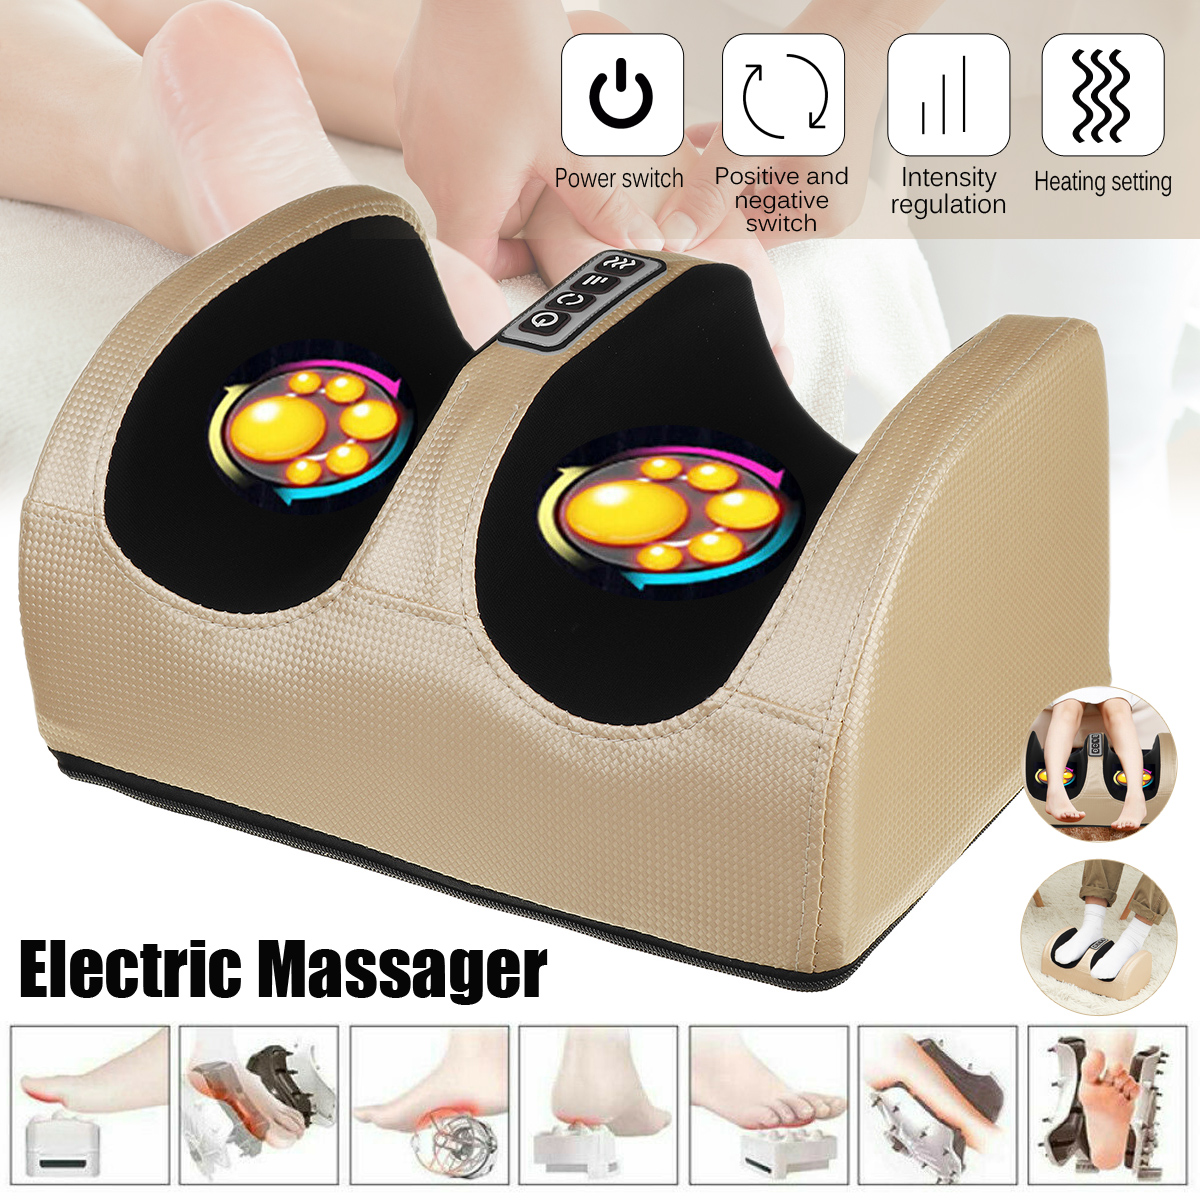 Electric-Foot-Massager-Calf-Leg-Massage-Heated-Shiatsu-Kneading-Rolling-Machine-1786905-2